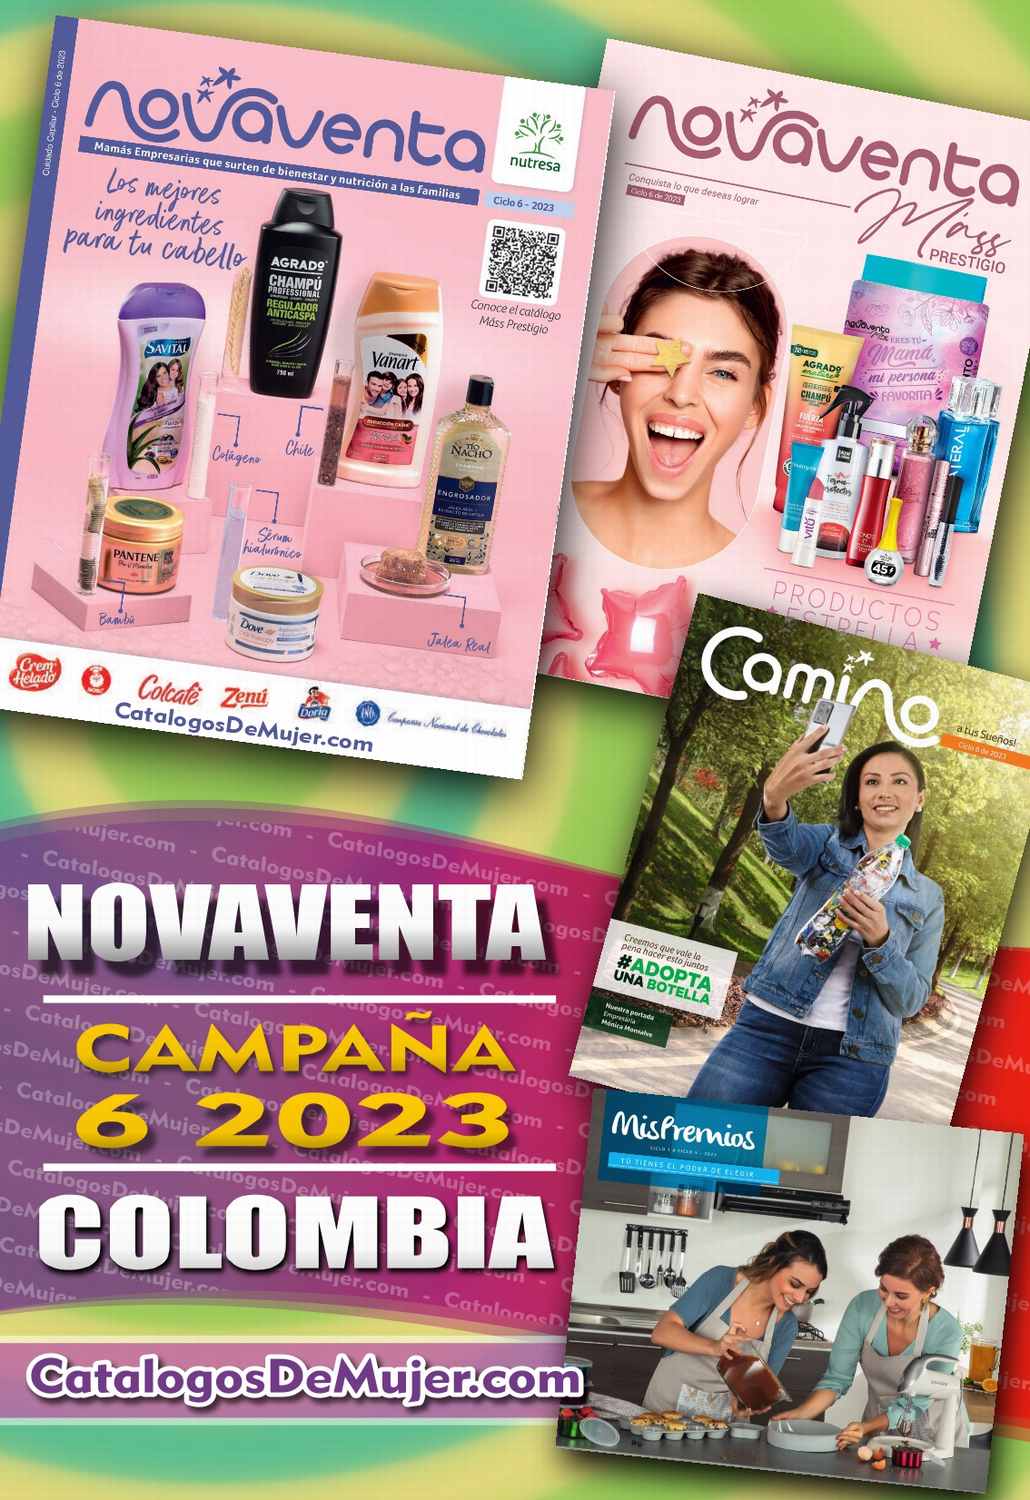 Catalogo Novaventa Campaña 6 2023 Colombia